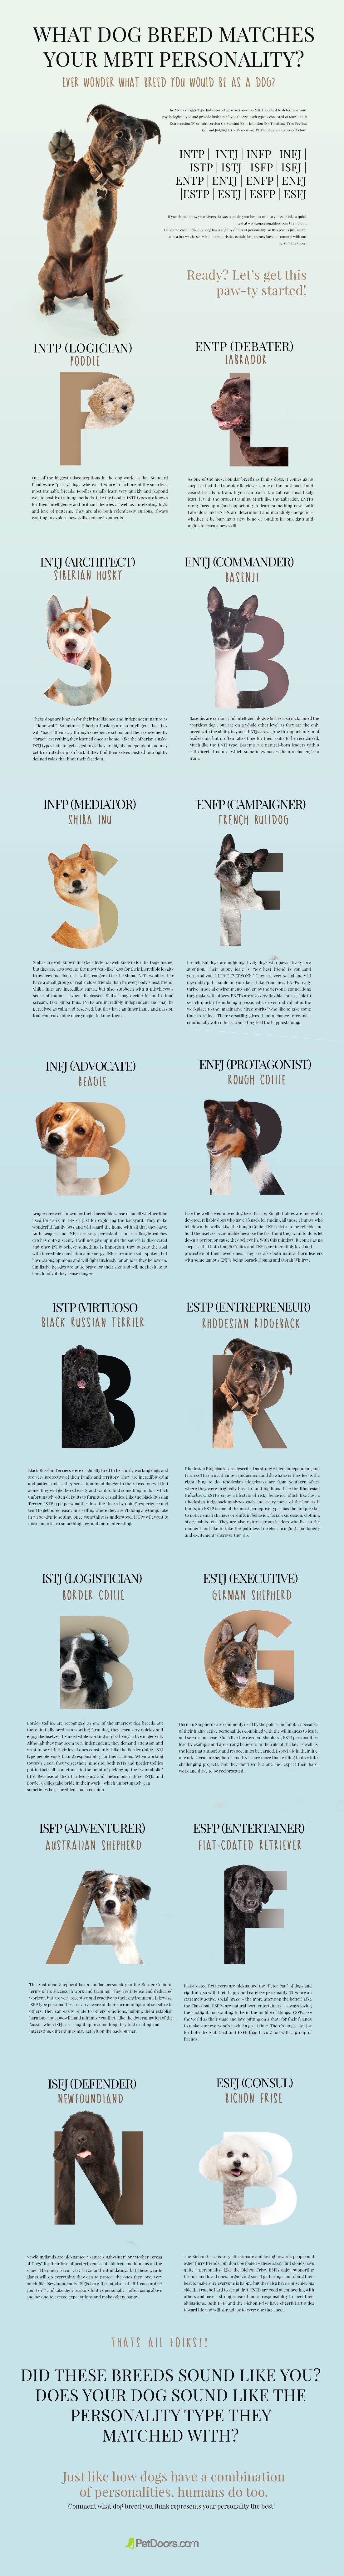 Quelle race de chien correspond à votre personnalité MBTI ? 